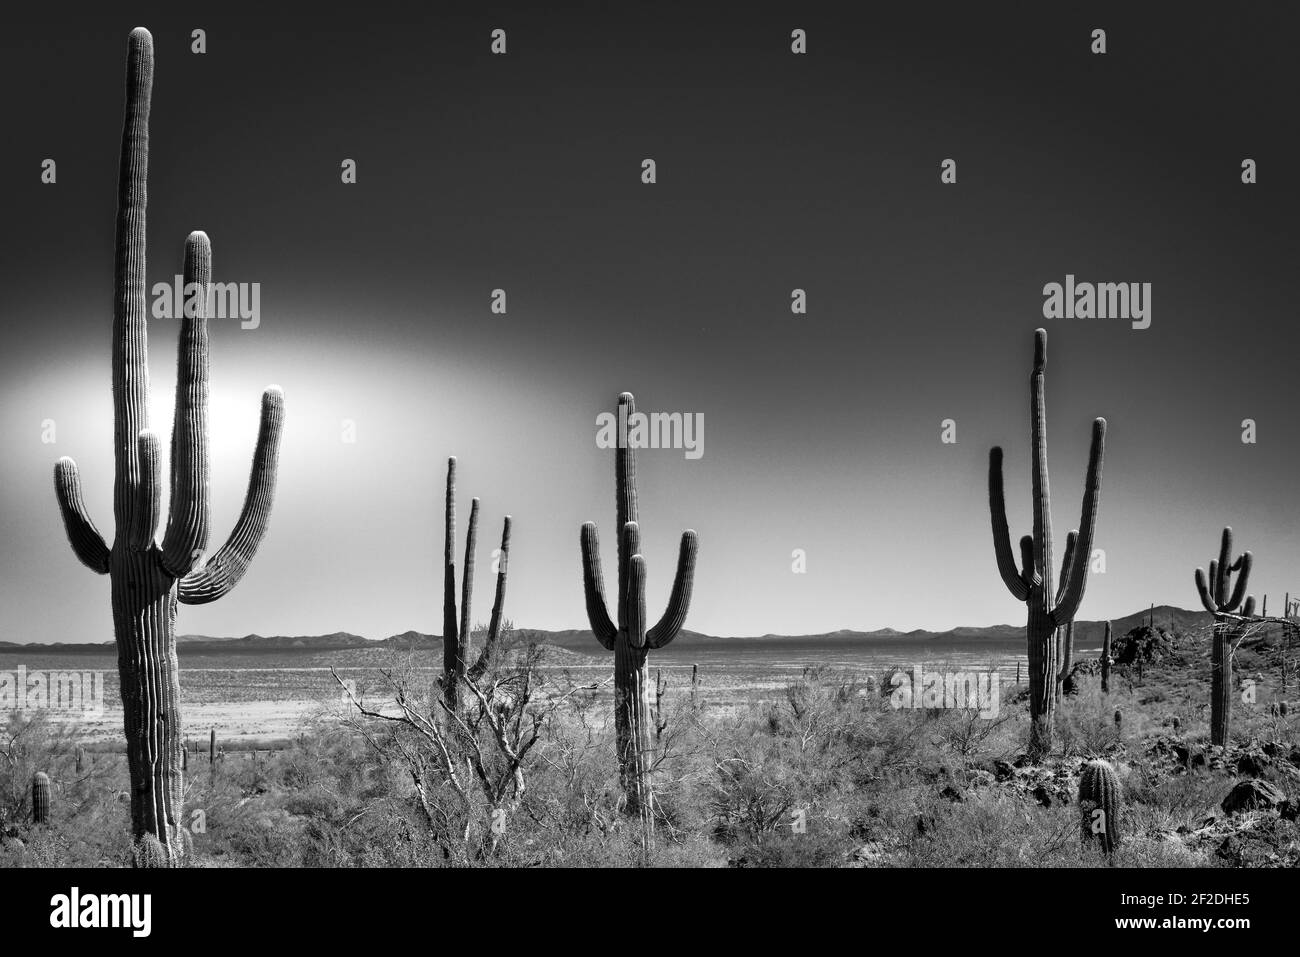 Le cactus saguaro, une icône de l'Ouest américain, s'étend le long du paysage du désert de Sonoran avec les montagnes lointaines Picacho, AZ, en noir et blanc Banque D'Images